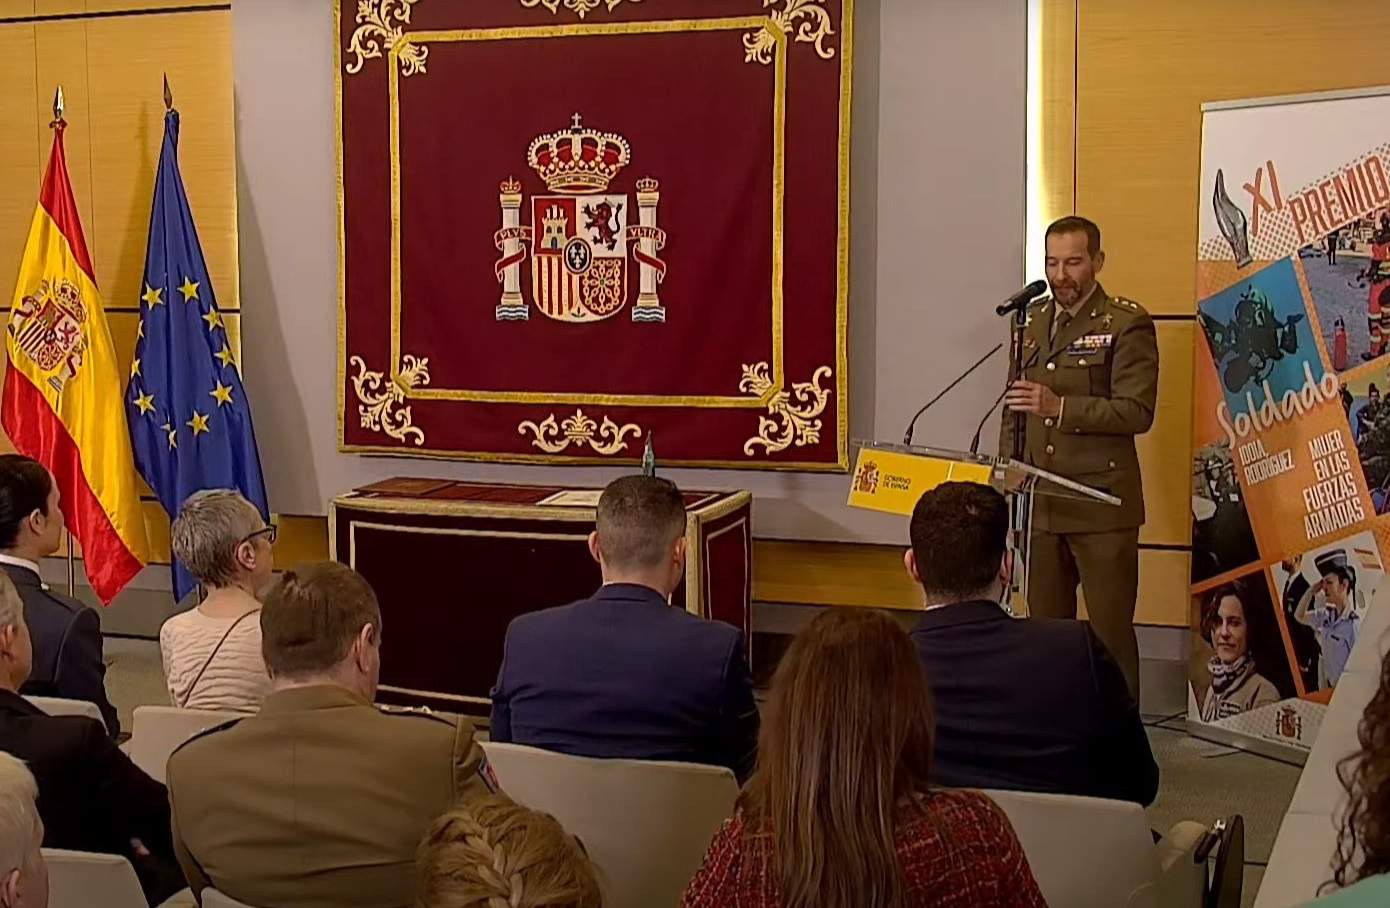 El Frank Sinatra del ejército: el vídeo viral de un militar español cantando en un acto oficial